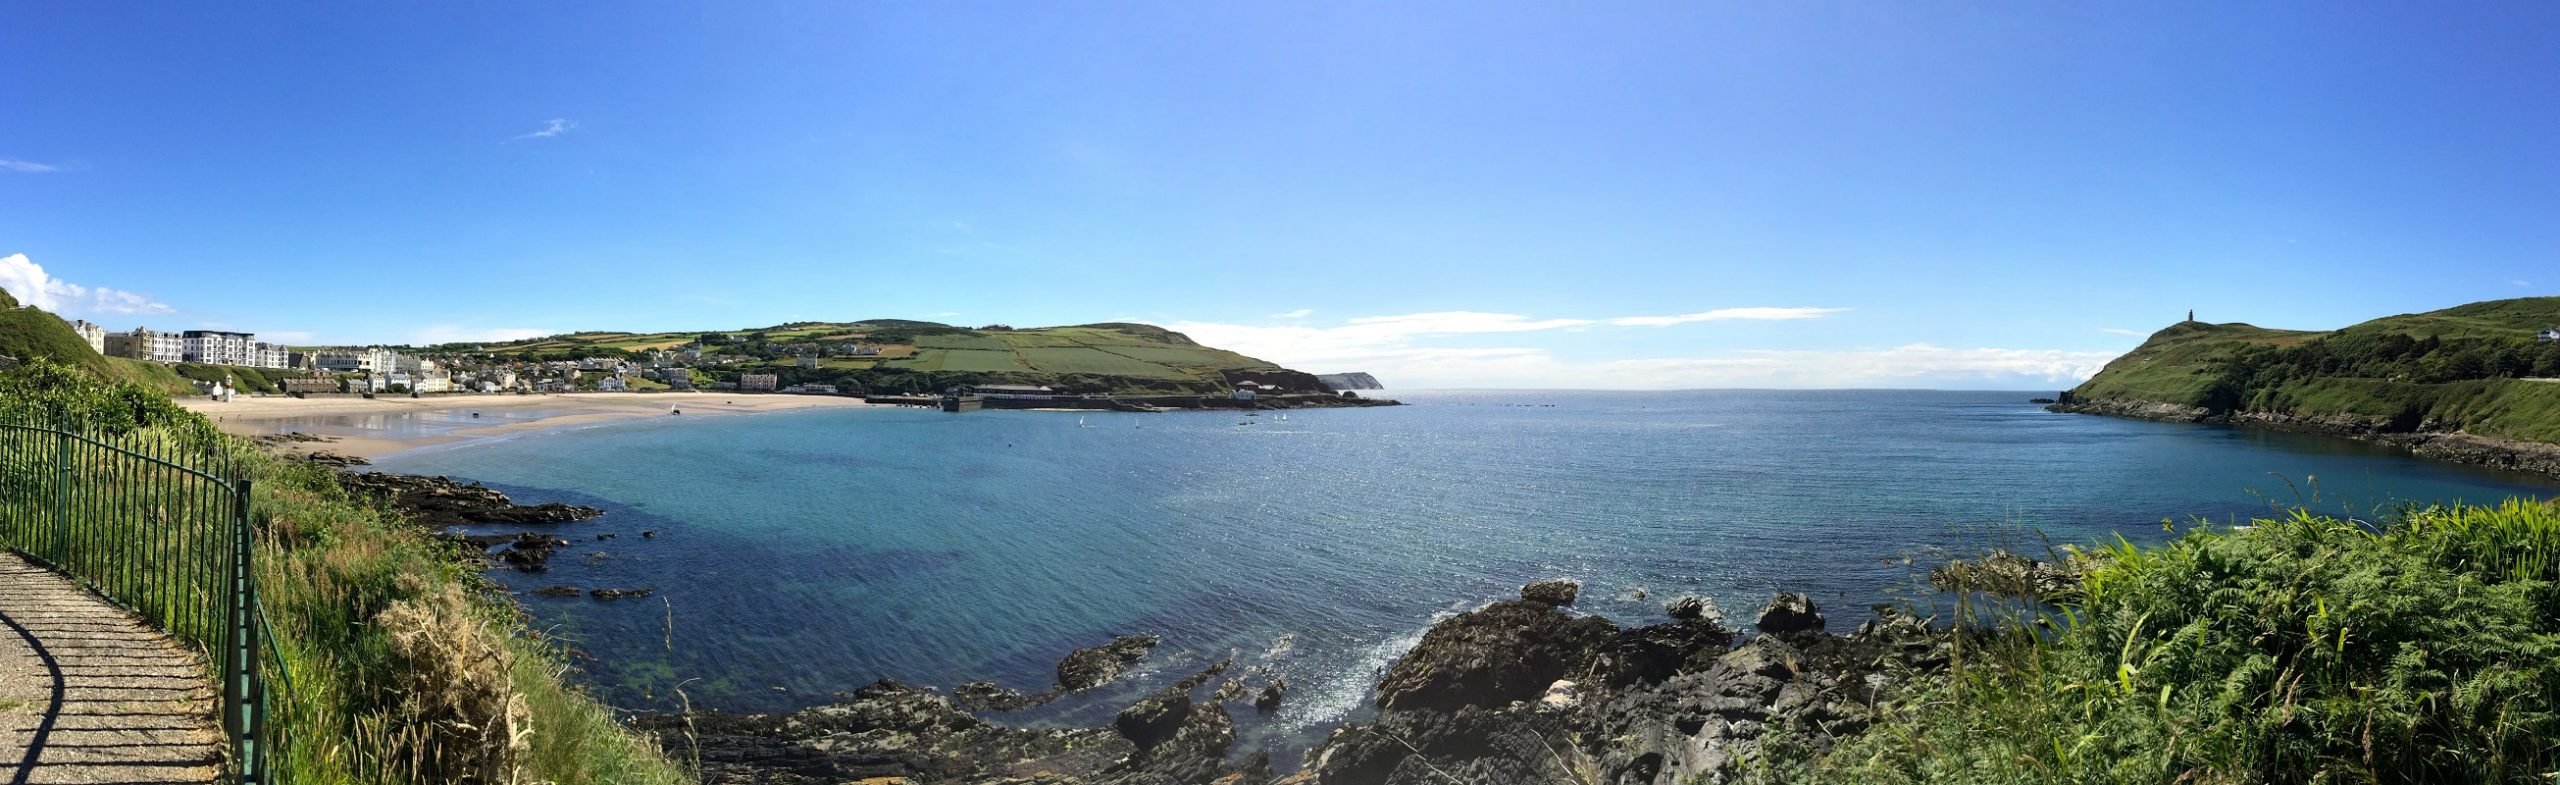 Isle of Man Panoramabild Küste Meer Felsen blauer Himmel